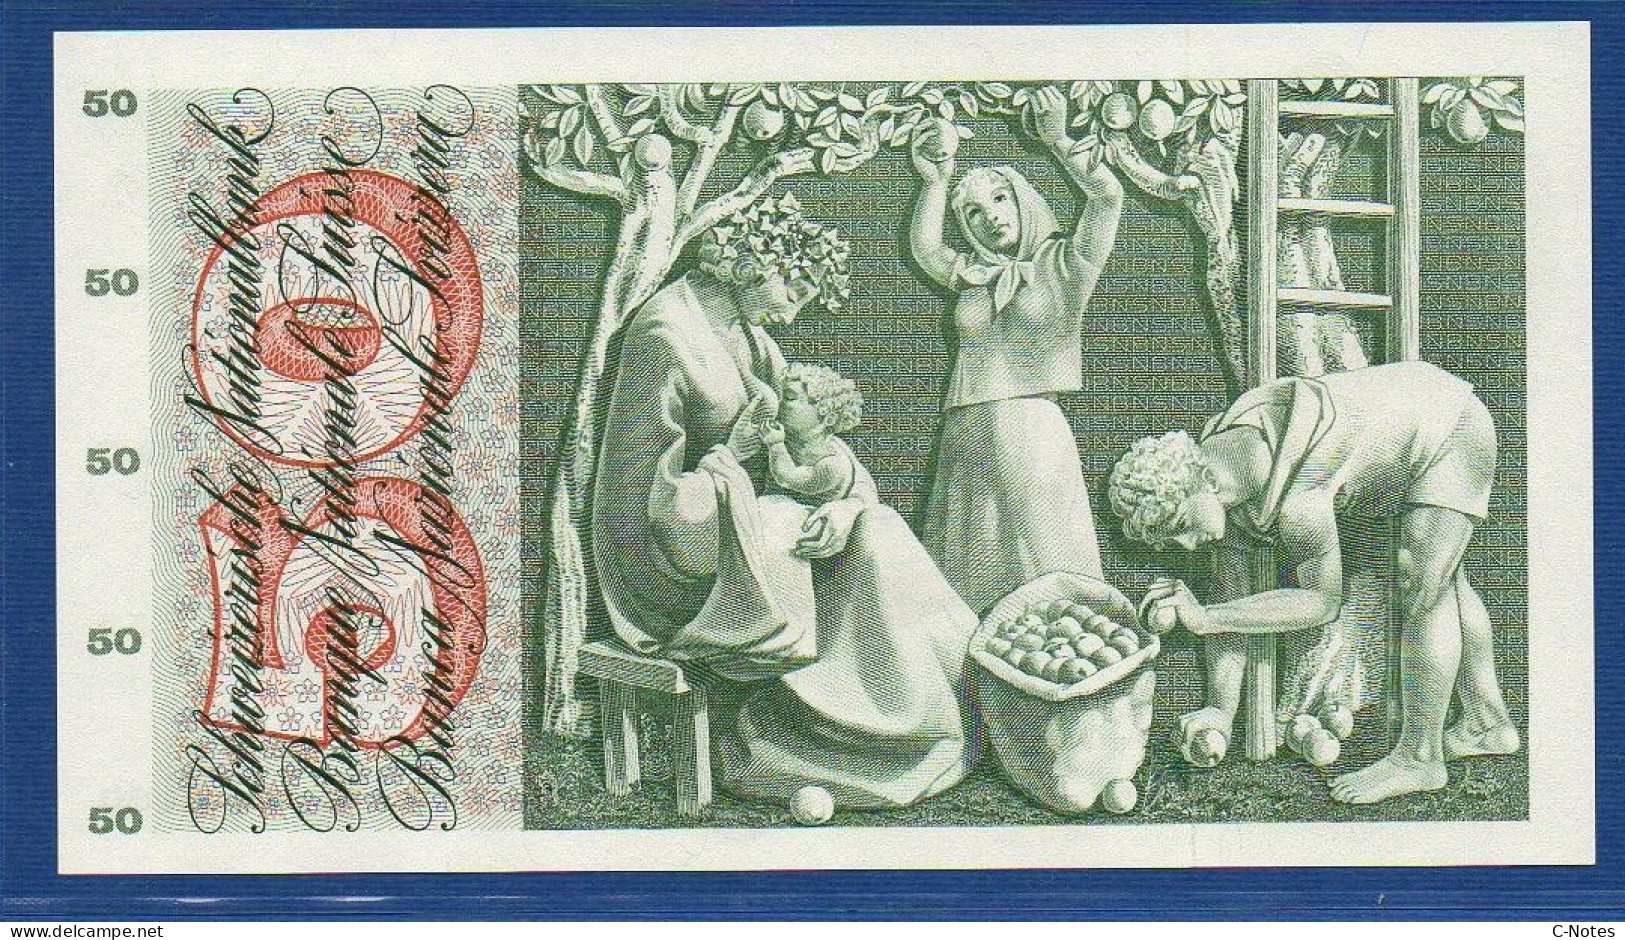 SWITZERLAND - P.48f(2) - 50 Francs 1965 AUNC, Serie 21R 53706  -signatures: Brenno Galli / R. Motta / Kunz - Suiza